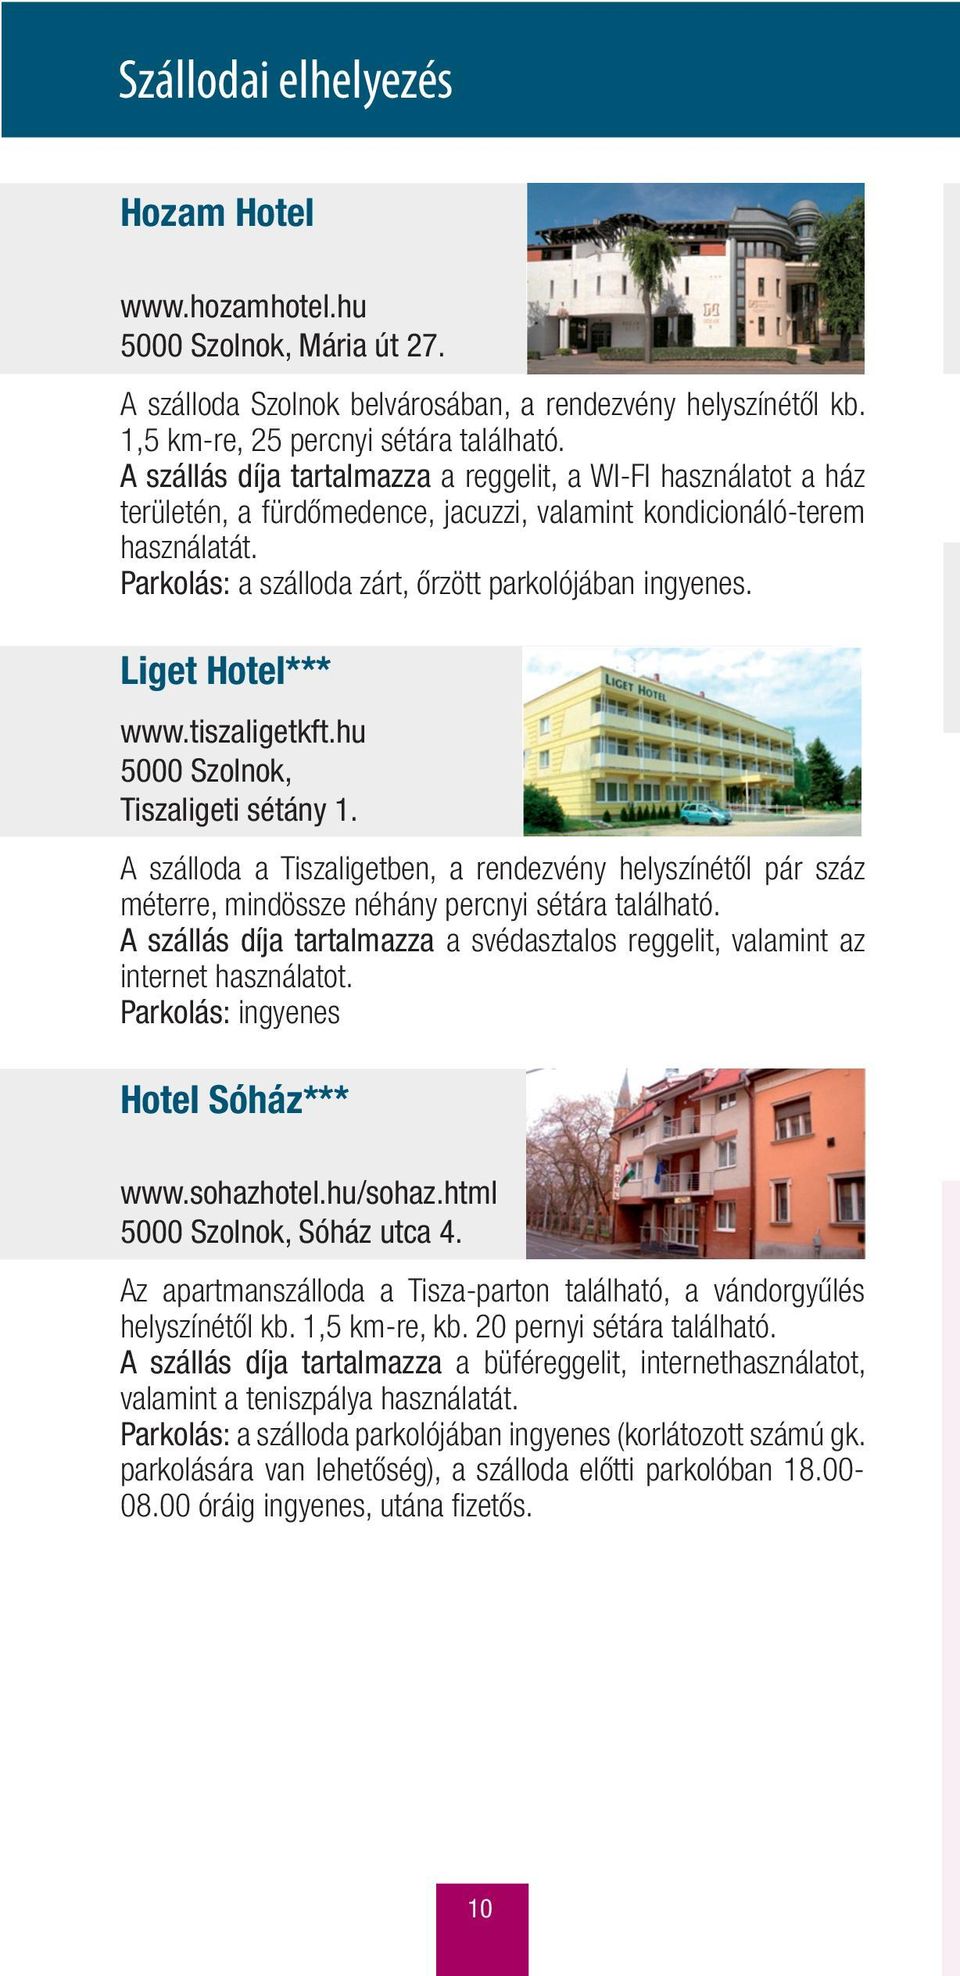 Liget Hotel*** www.tiszaligetkft.hu 5000 Szolnok, Tiszaligeti sétány 1. A szálloda a Tiszaligetben, a rendezvény helyszínétől pár száz méterre, mindössze néhány percnyi sétára található.